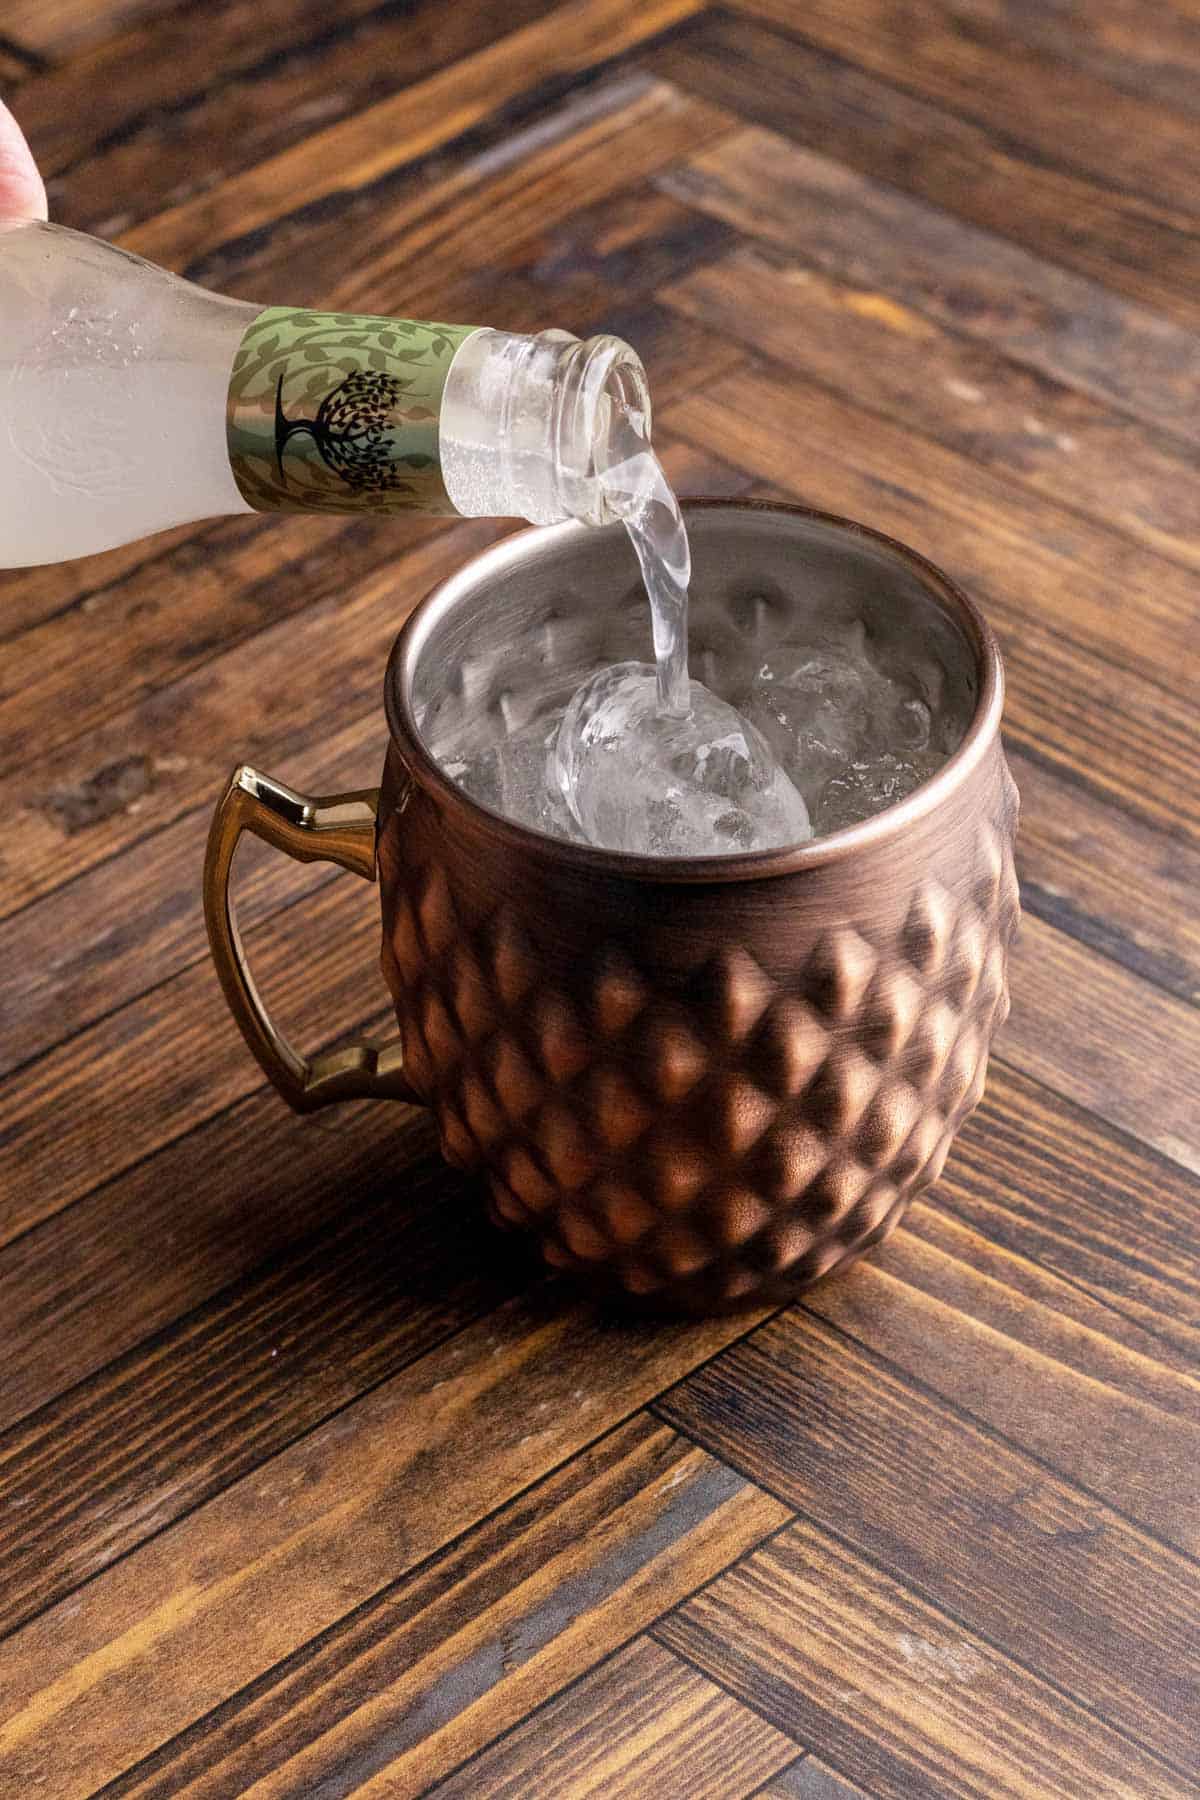 Adding ginger beer to a copper mug.